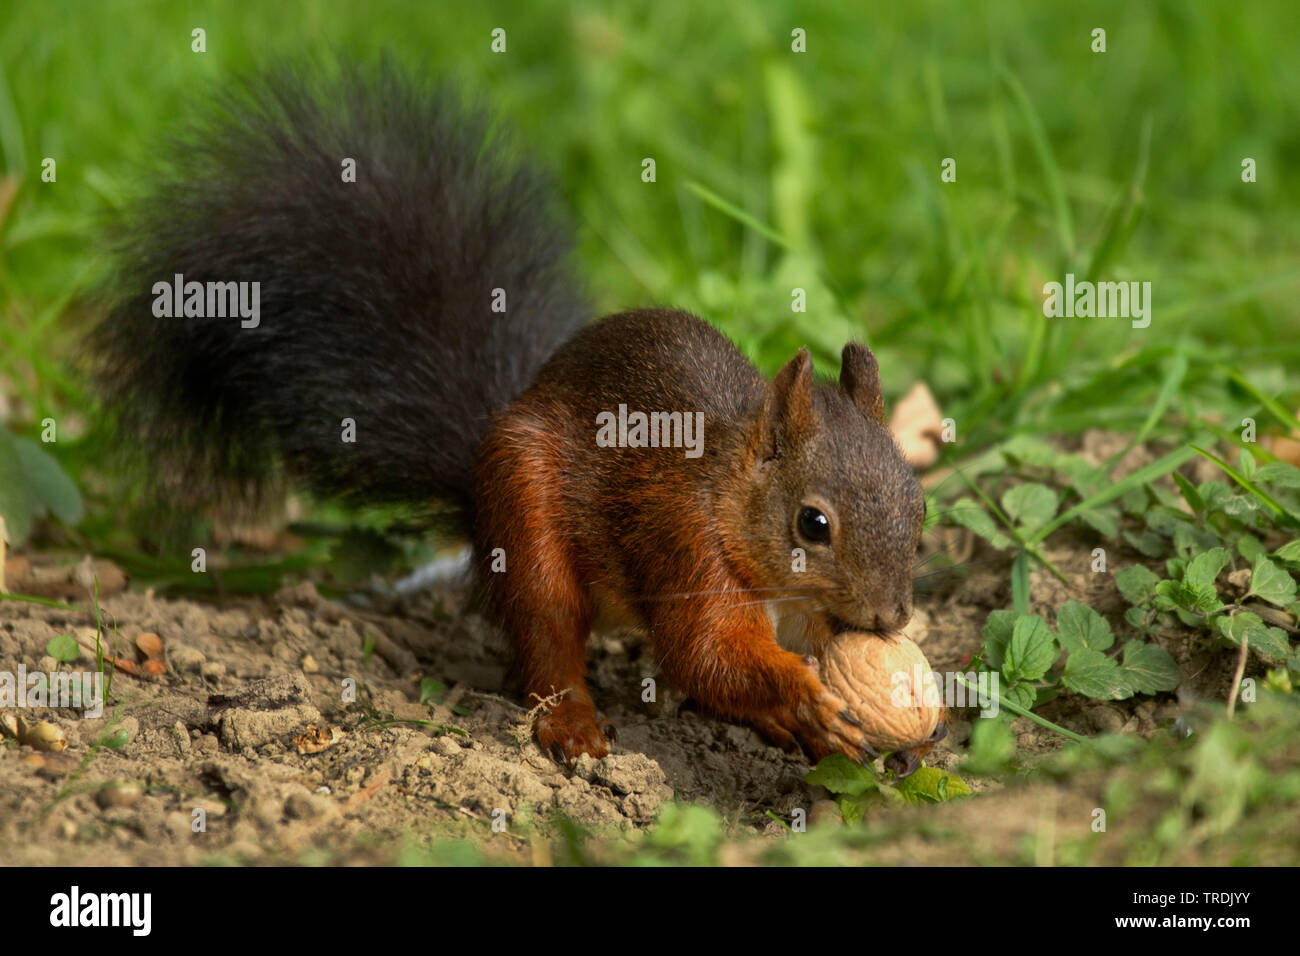 Europäische Eichhörnchen, Eurasischen Eichhörnchen (Sciurus vulgaris), am Boden mit einem Nussbaum, Deutschland, Nordrhein-Westfalen Stockfoto